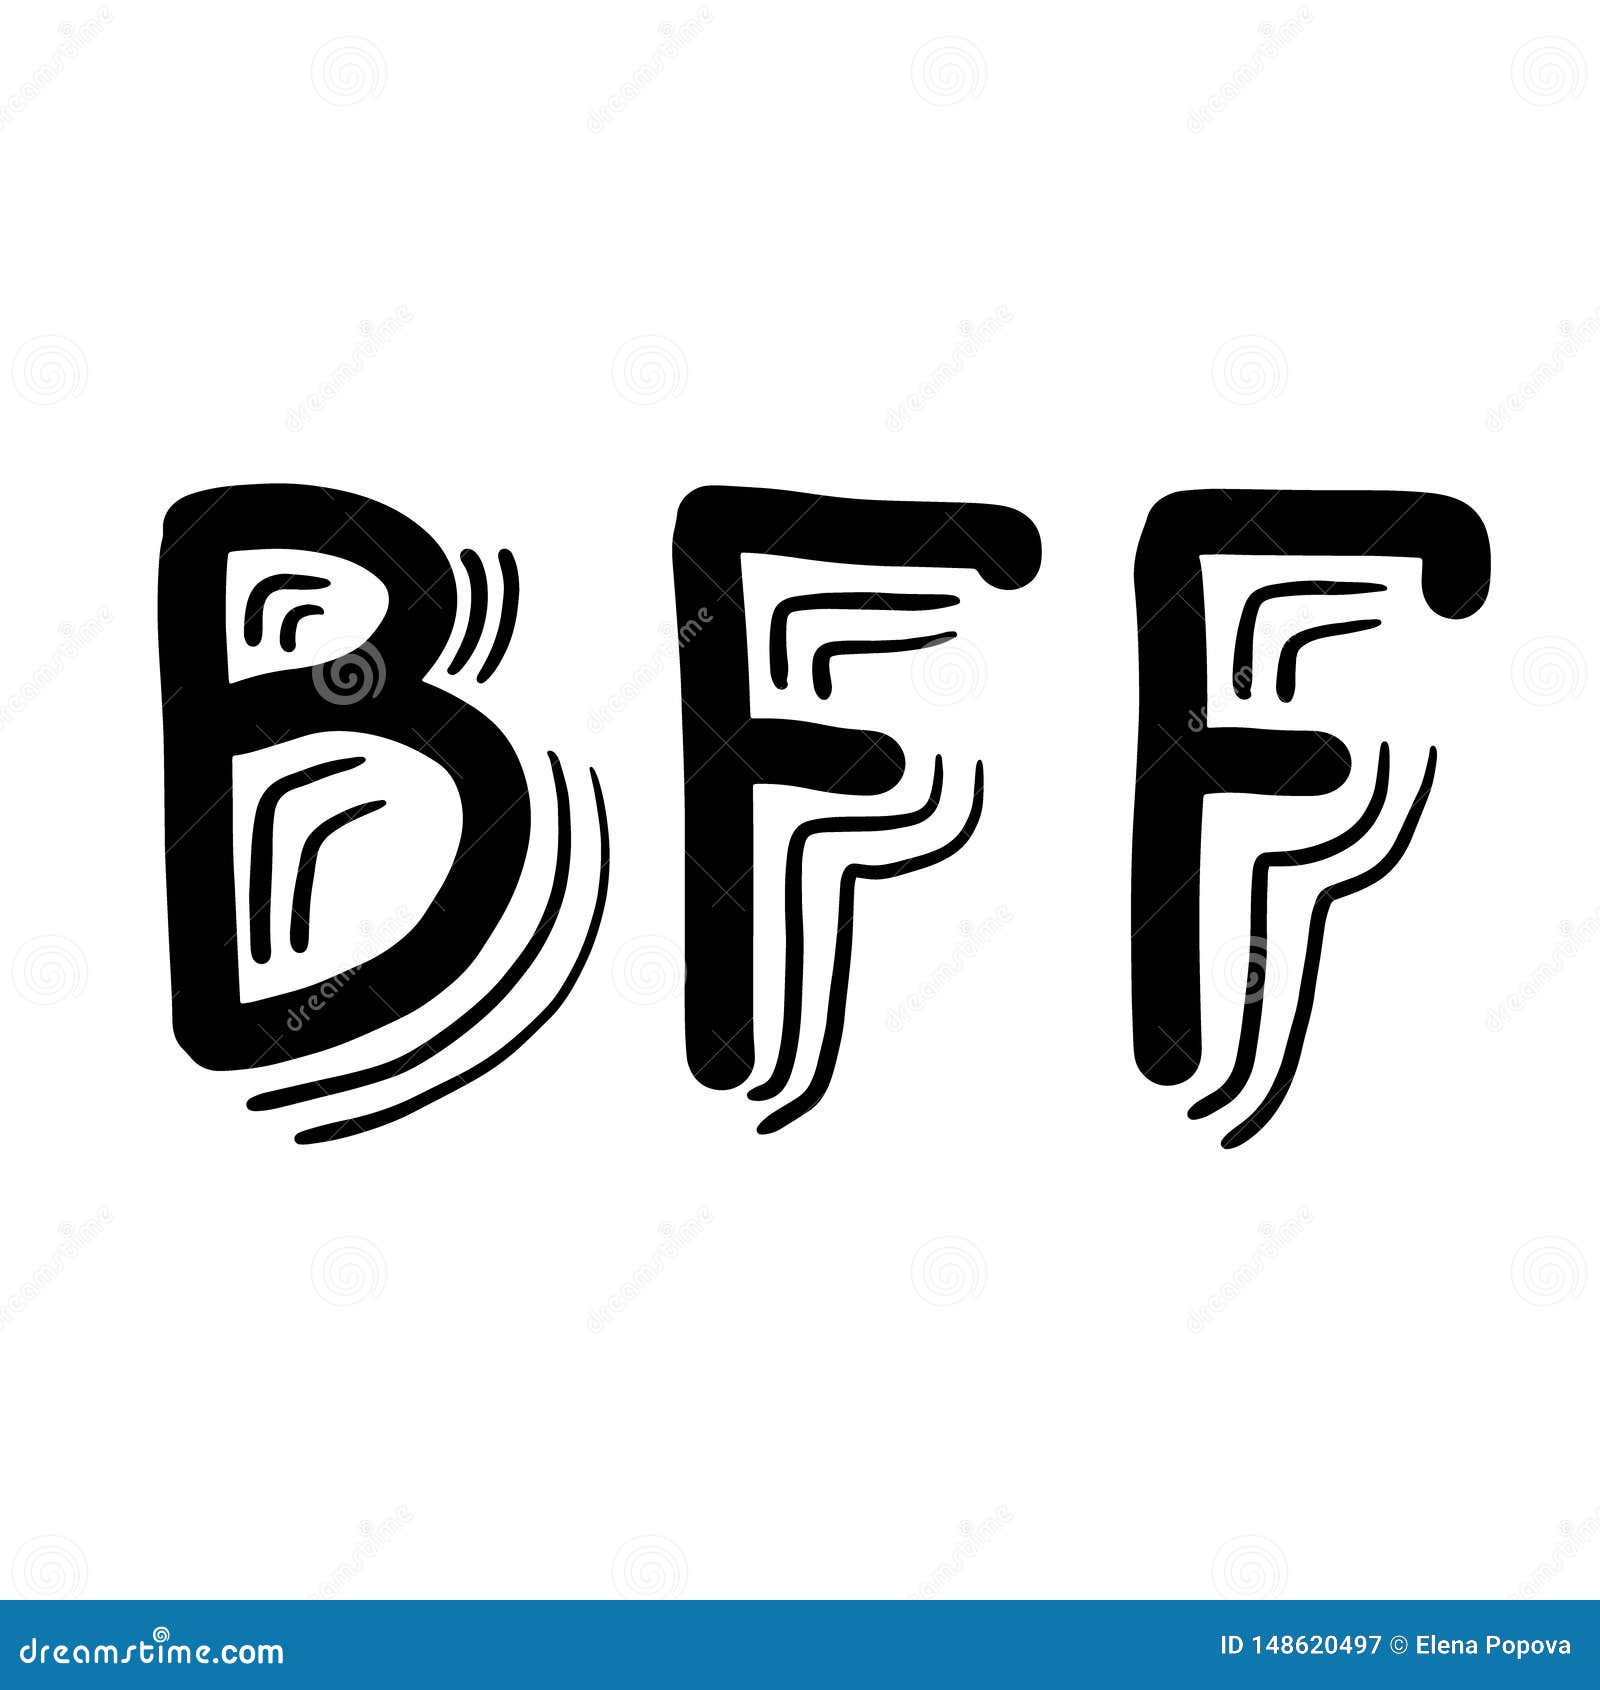 Estude com a Prepara - BFF é a sigla para Best Friend Forever, que significa  melhores amigas para sempre. O termo é oriundo do inglês, e se  popularizou mundialmente através das redes